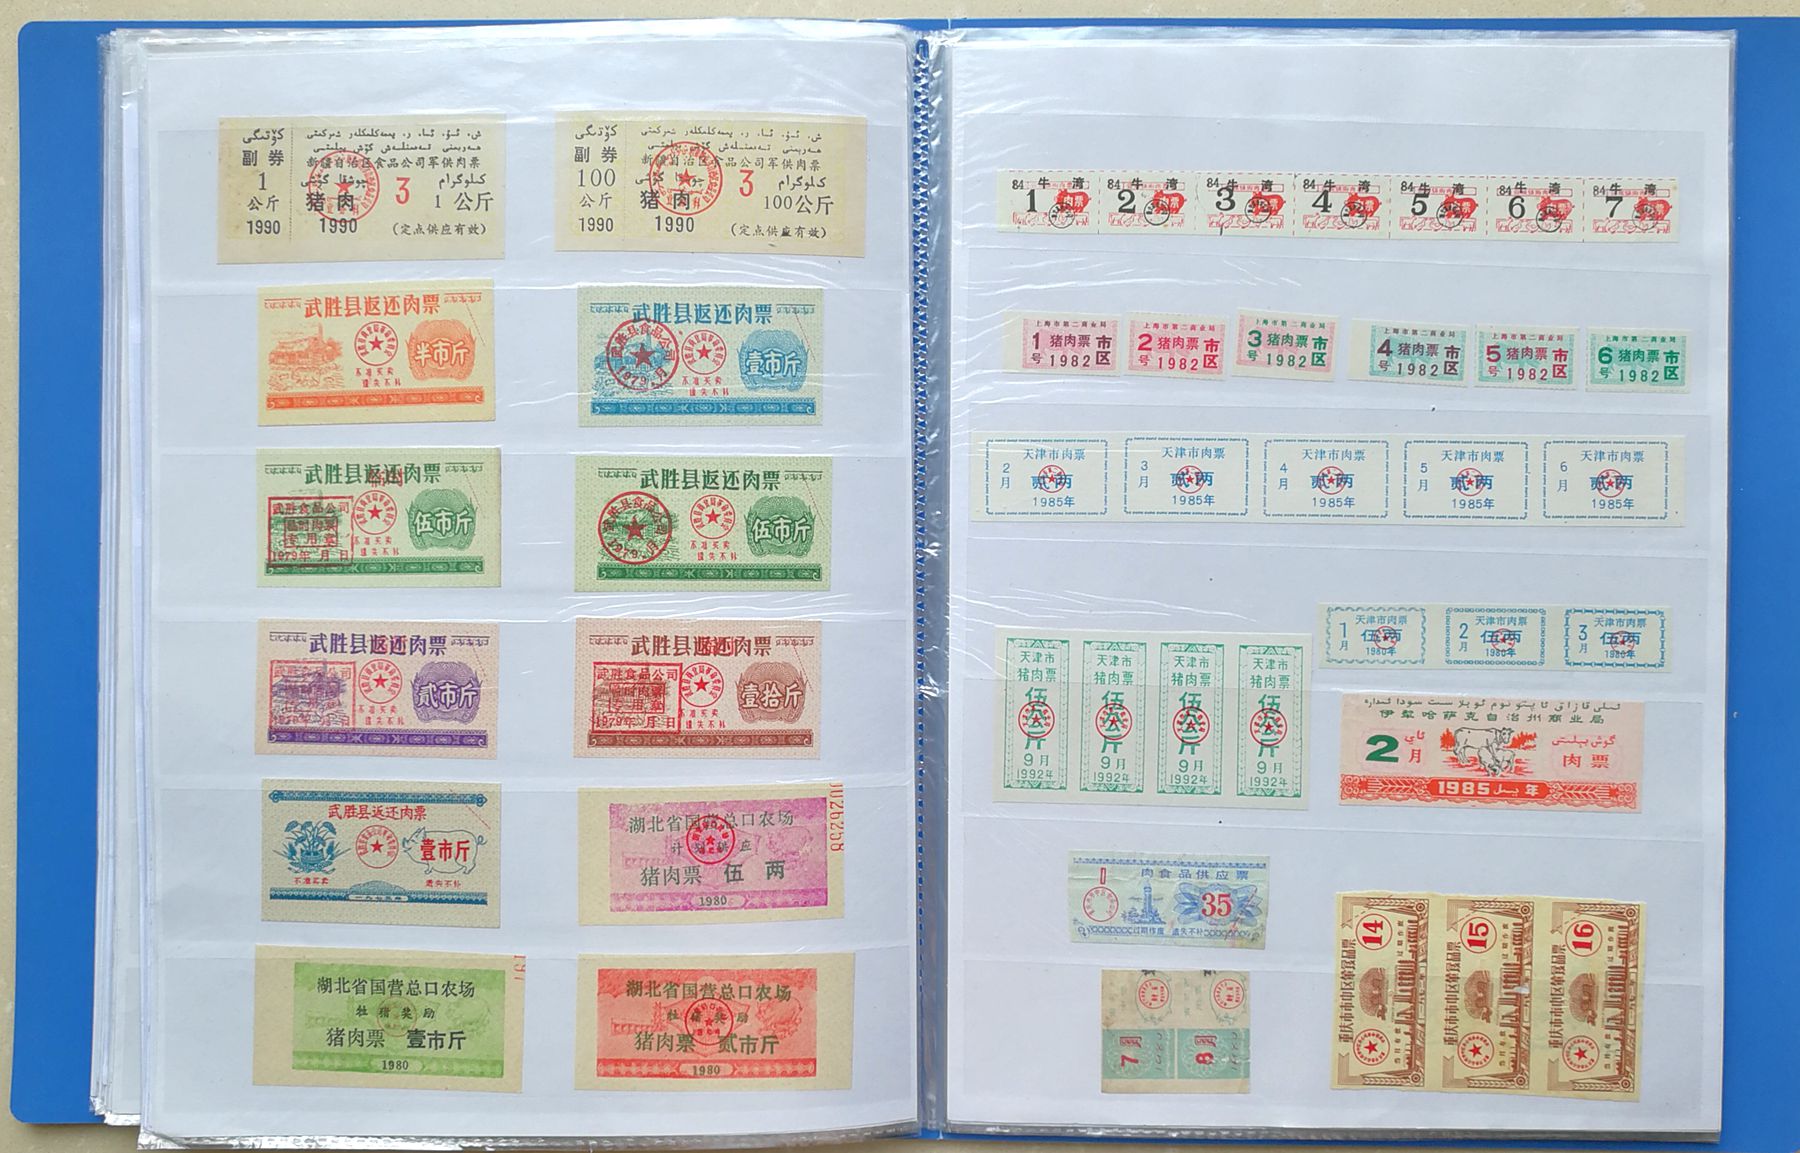 H2001, Album of 1200 pcs Ration Coupons, China 1960-1992 - Click Image to Close